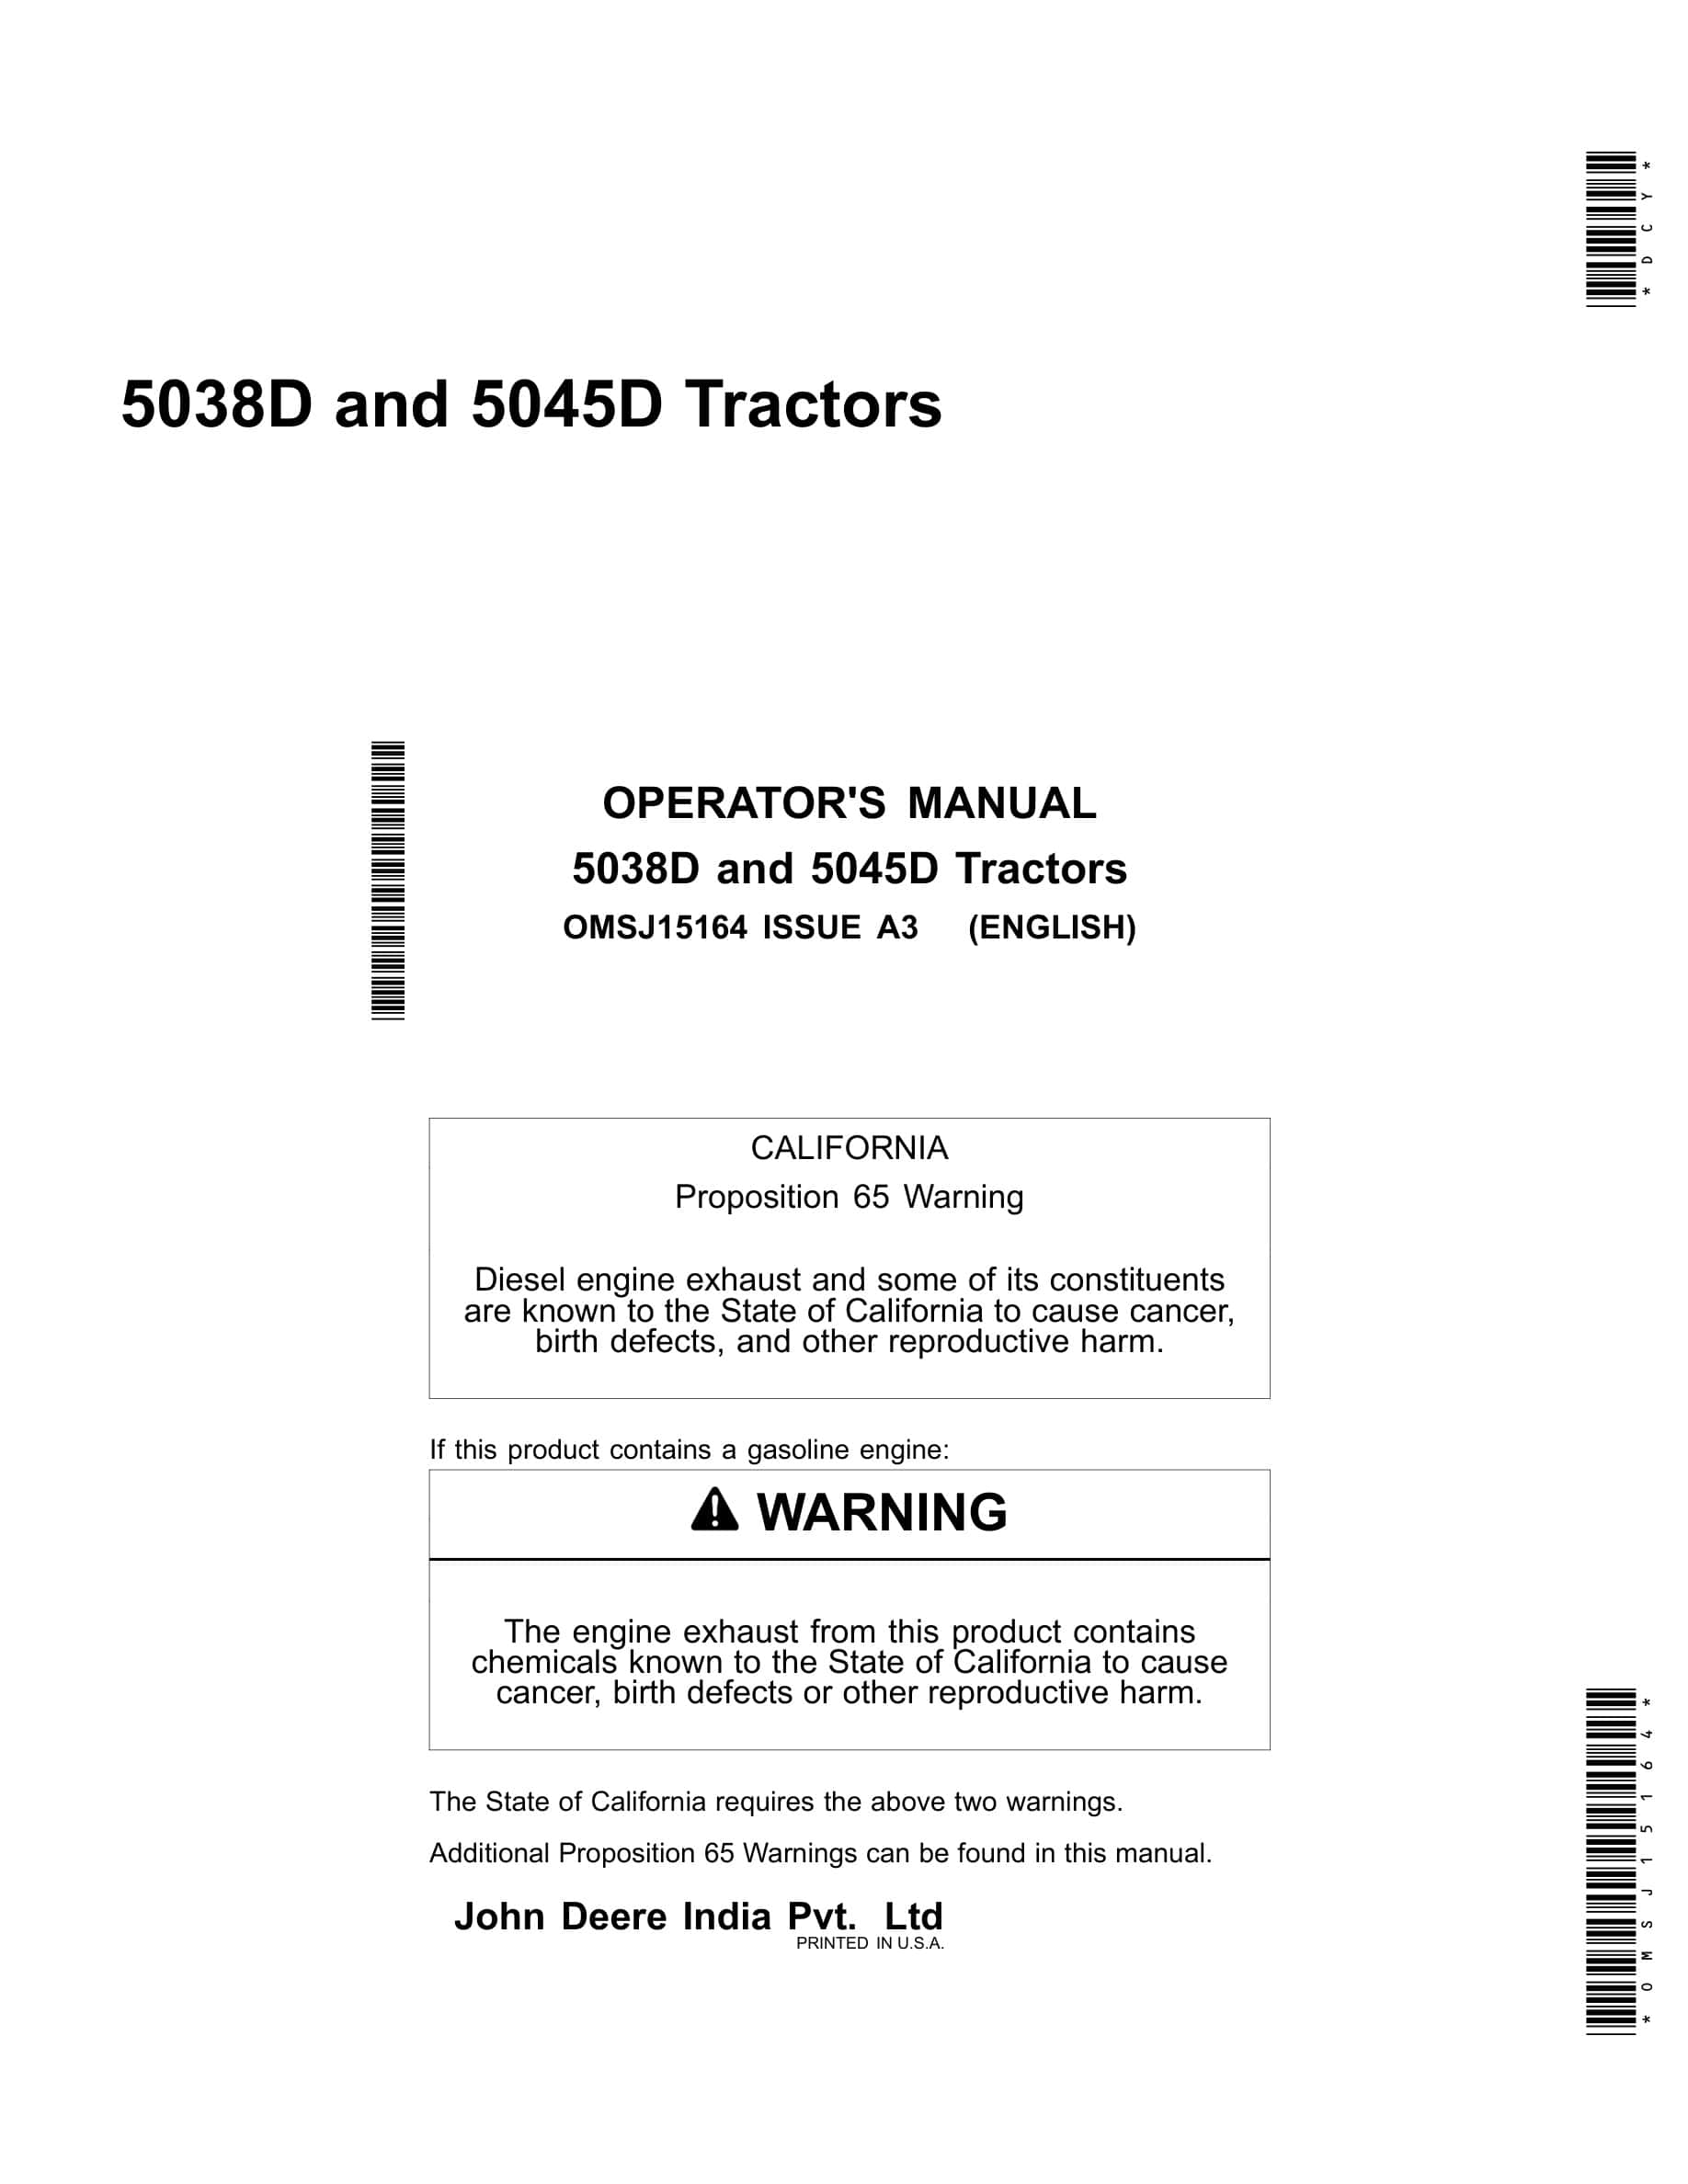 John Deere 5038d And 5045d Tractors Operator Manuals OMSJ15164-1